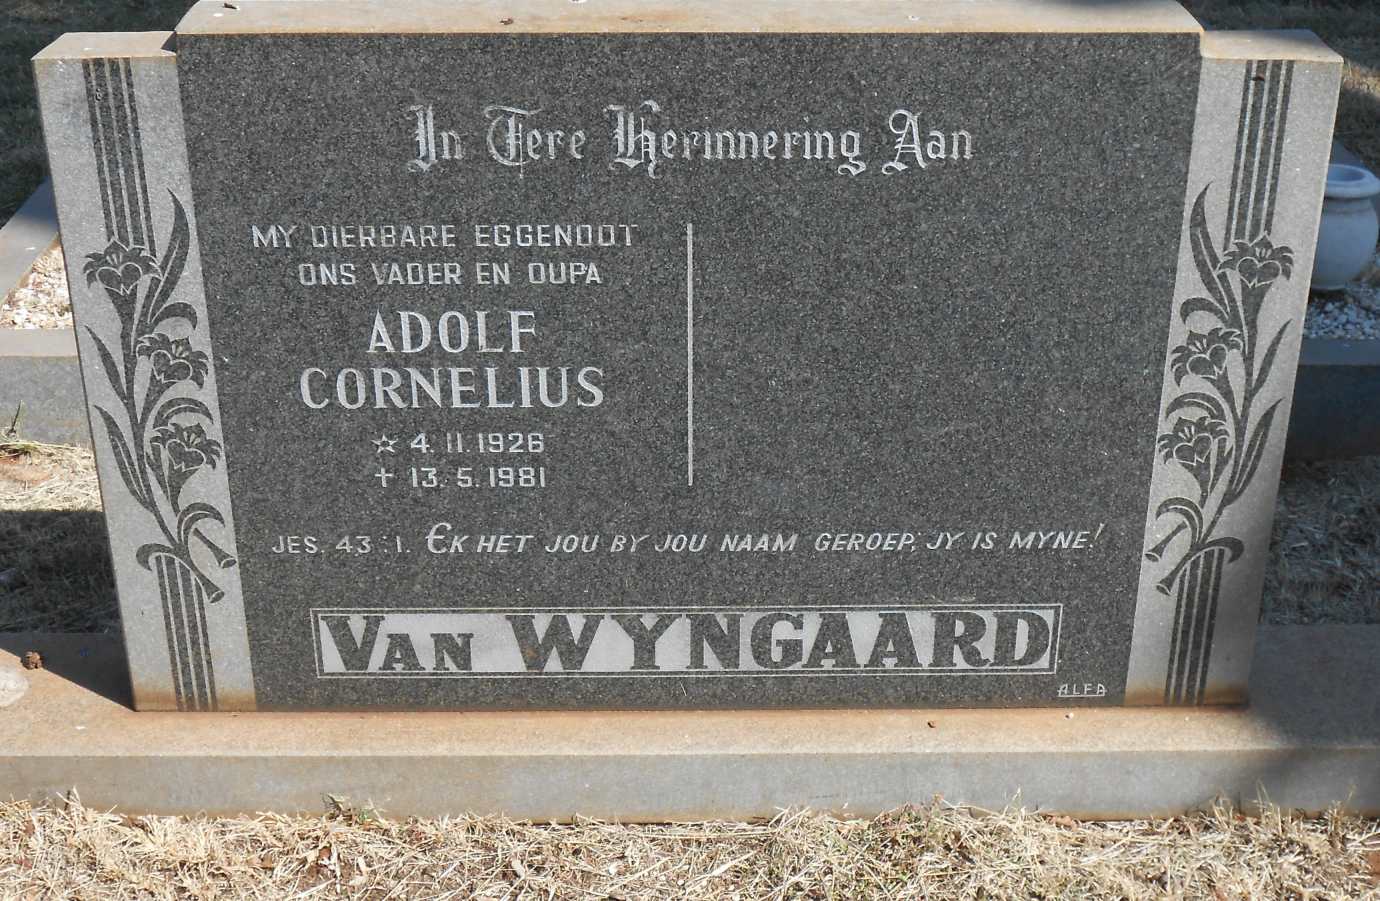 WYNGAARD Adolf Cornelius, van 1926-1981